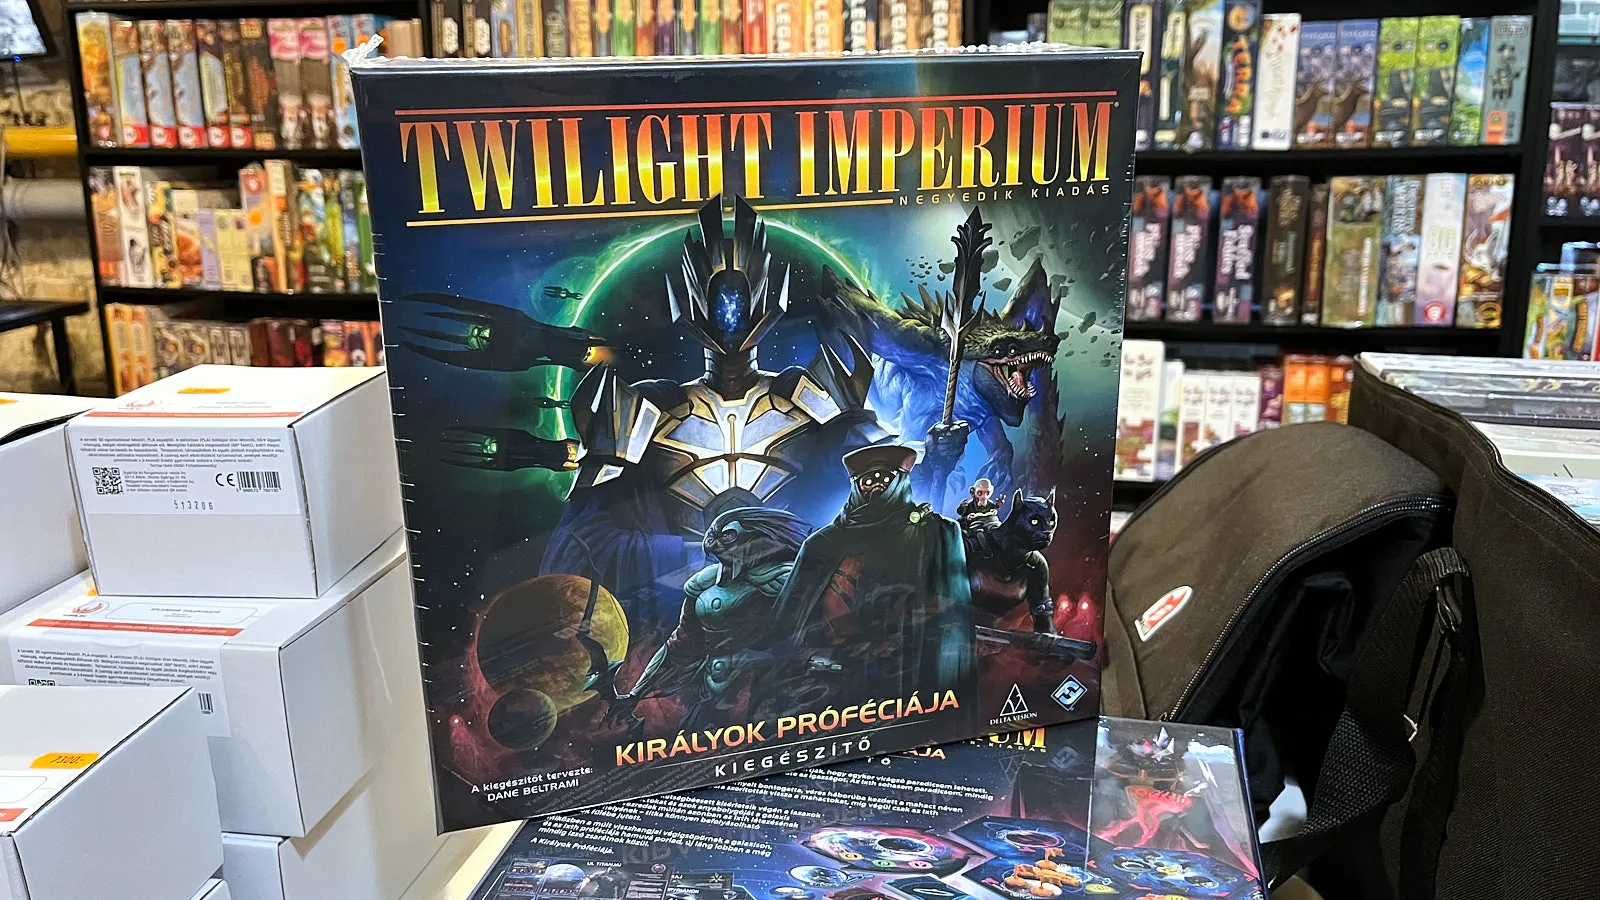 Twilight Impérium (magyar, negyedik kiadás) - Királyok próféciája (Twilight Imperium: Fourth Edition - Prophecy of Kings)